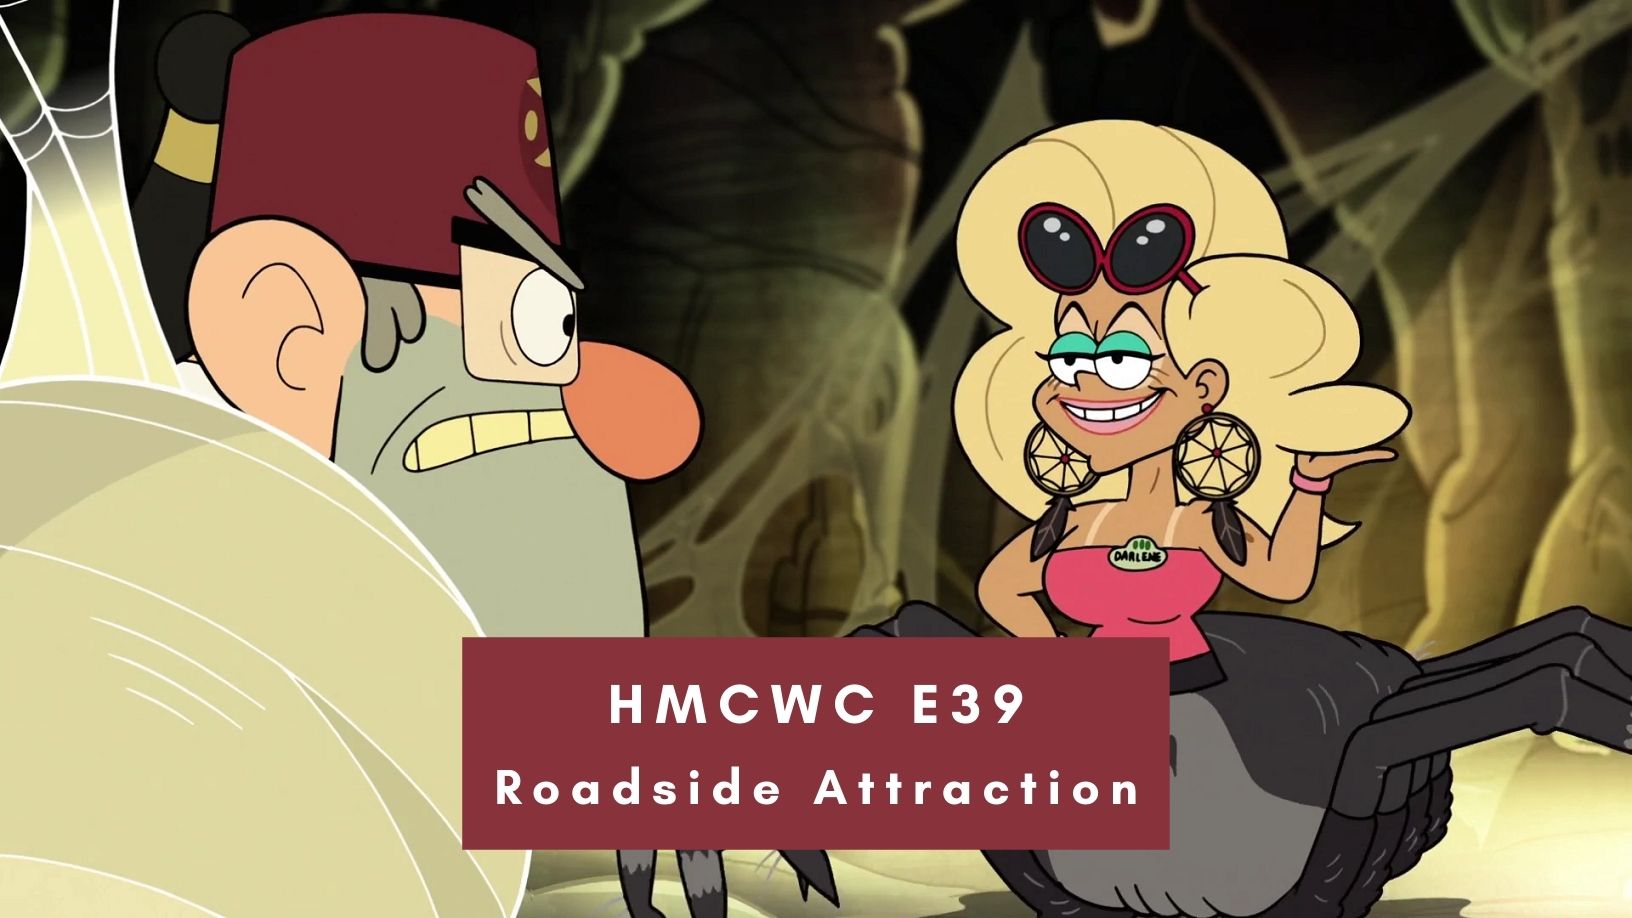 HMCWC E39: Roadside Attraction